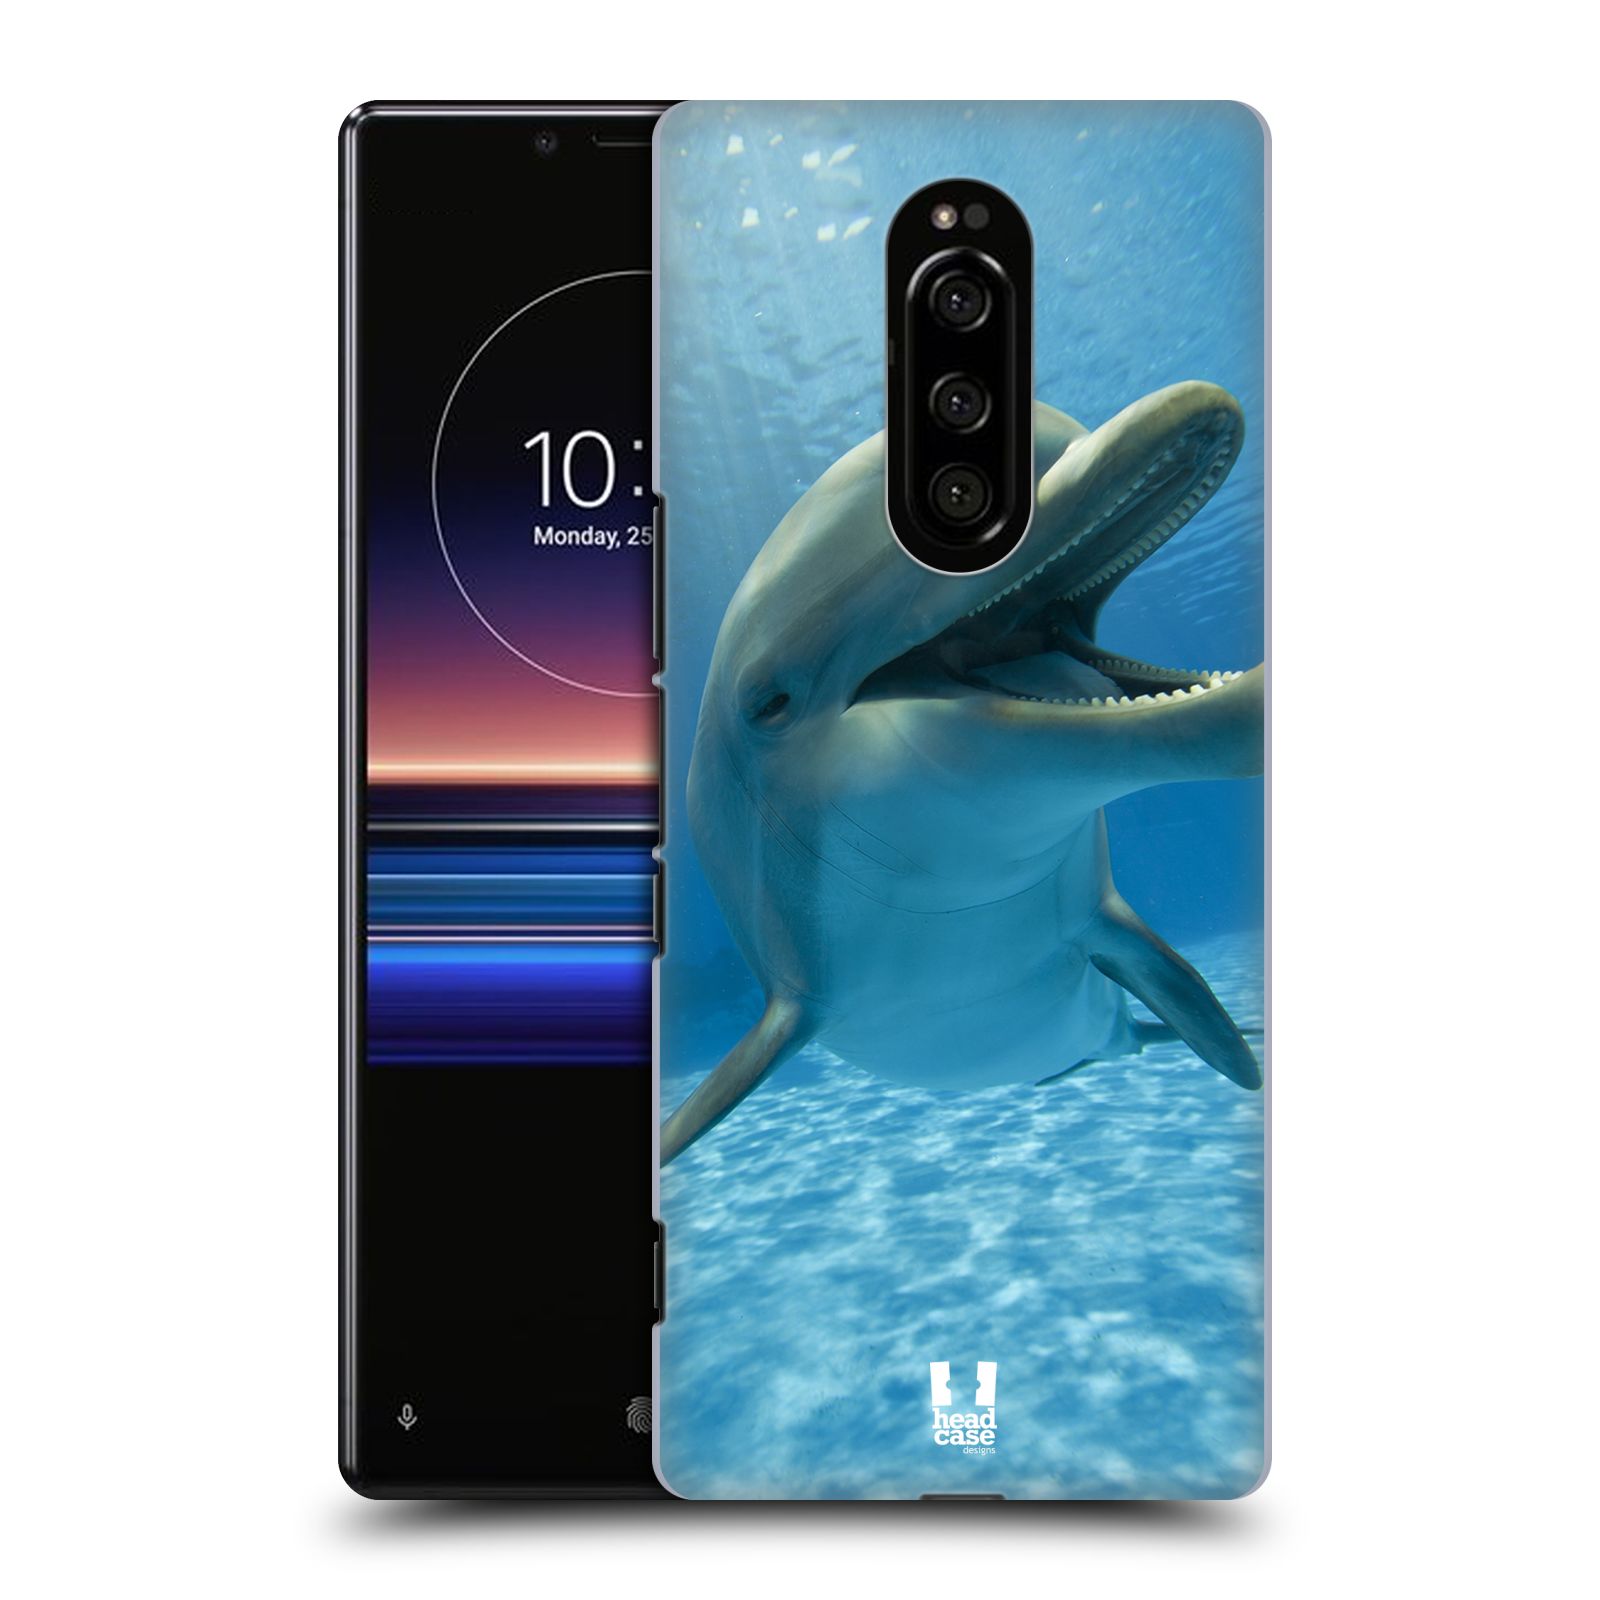 Zadní obal pro mobil Sony Xperia 1 - HEAD CASE - Svět zvířat delfín v moři